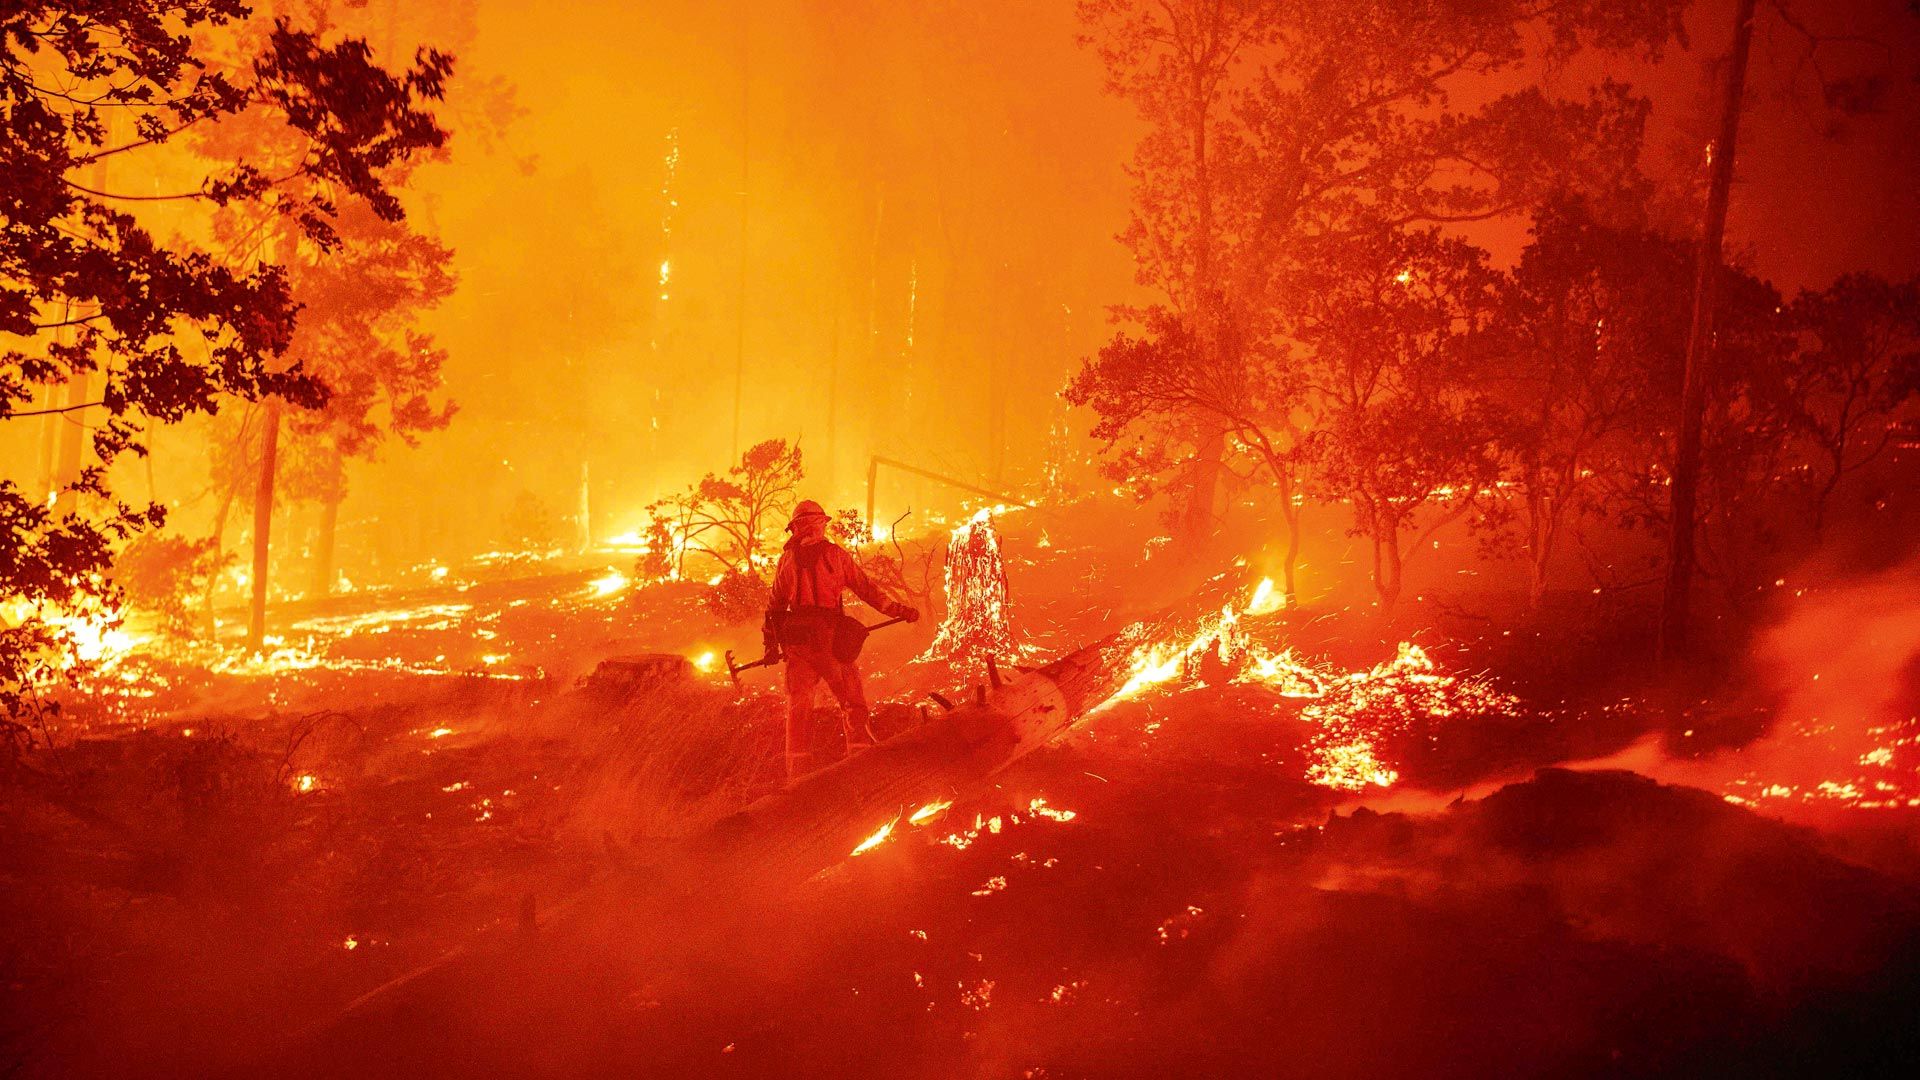 Noticias | Los focos de incendio que quedan: una crisis ambiental con sello humano